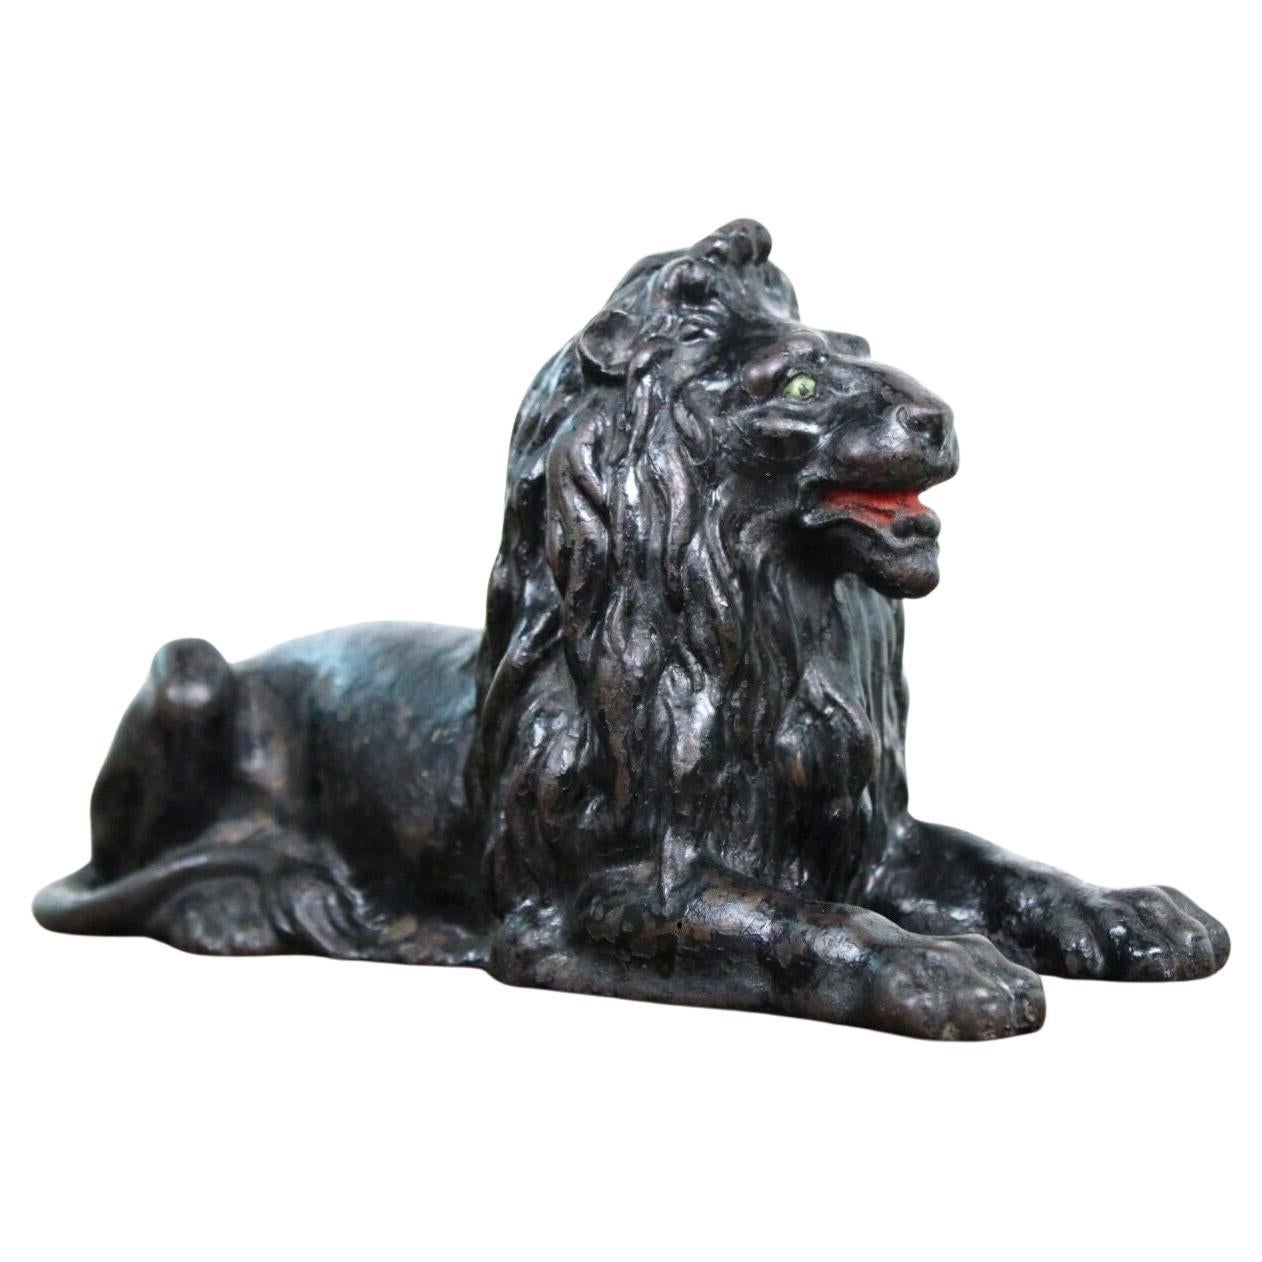 Antique Late 19th Century Cast Recumbent Lion